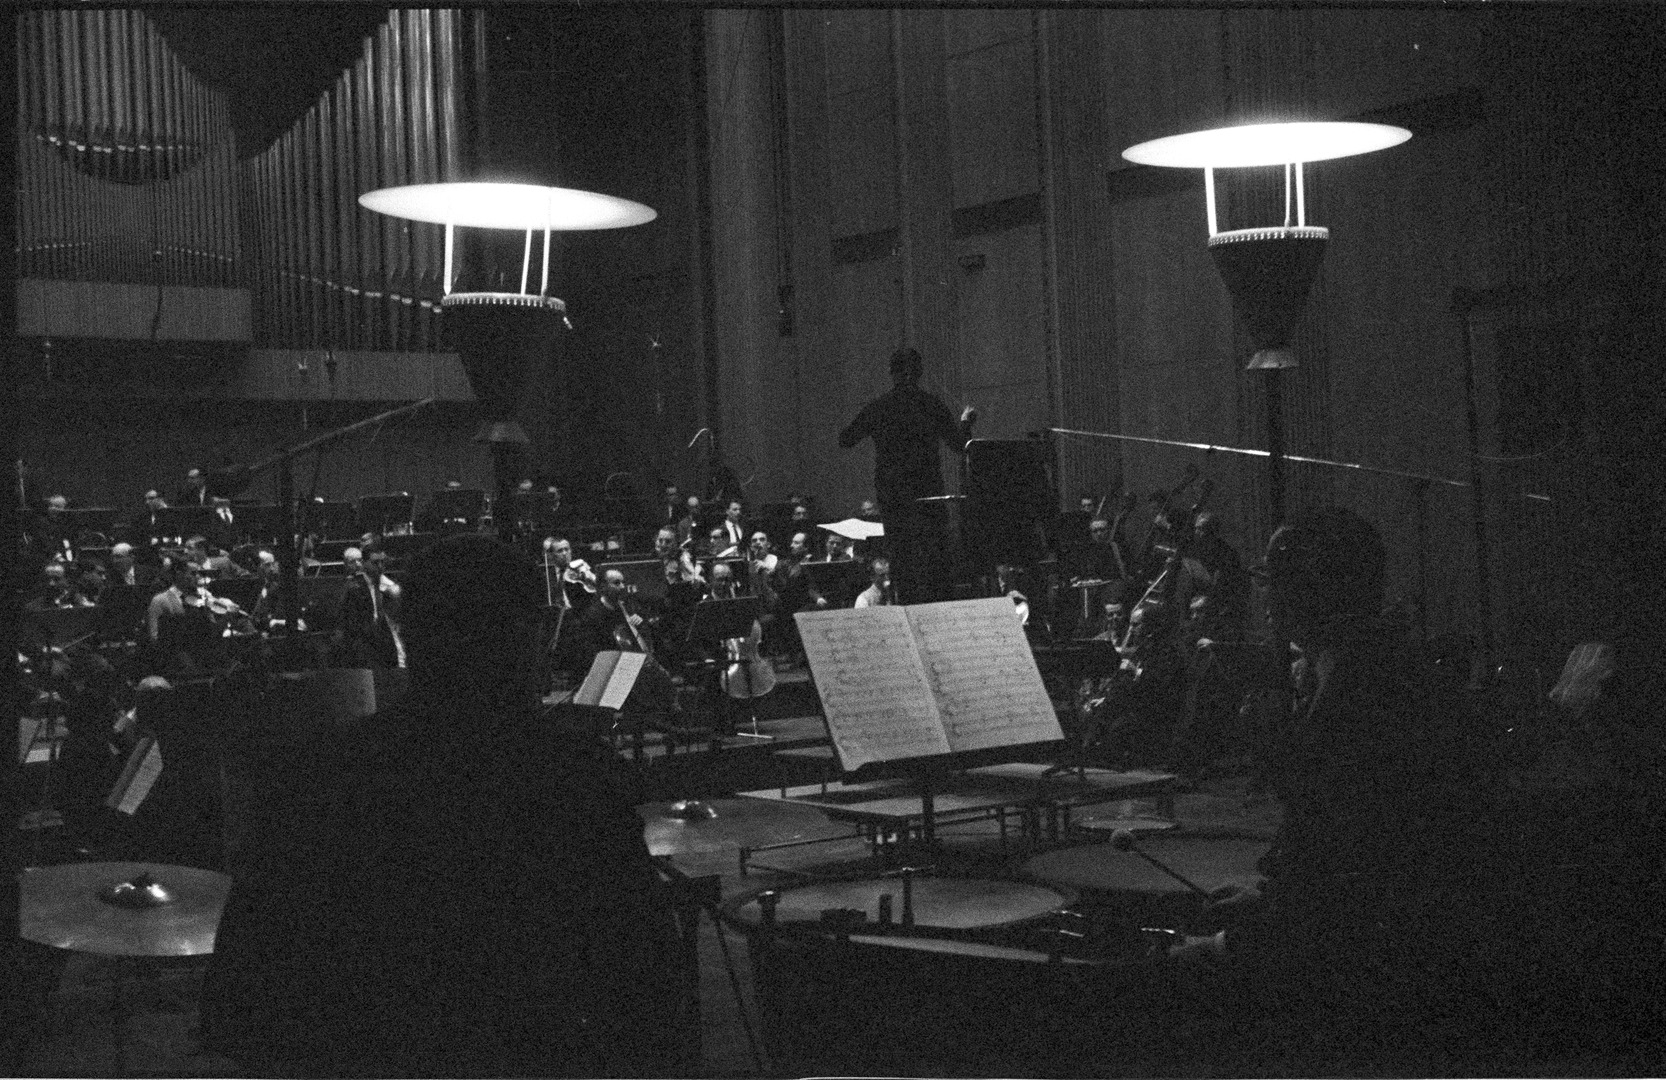 Probensituation: Blick auf das in Aktion befindliche Orchester, auf den Dirigenten Michael Gielen schauend, fotografiert von einer Position direkt hinter zwei Schlagzeugern